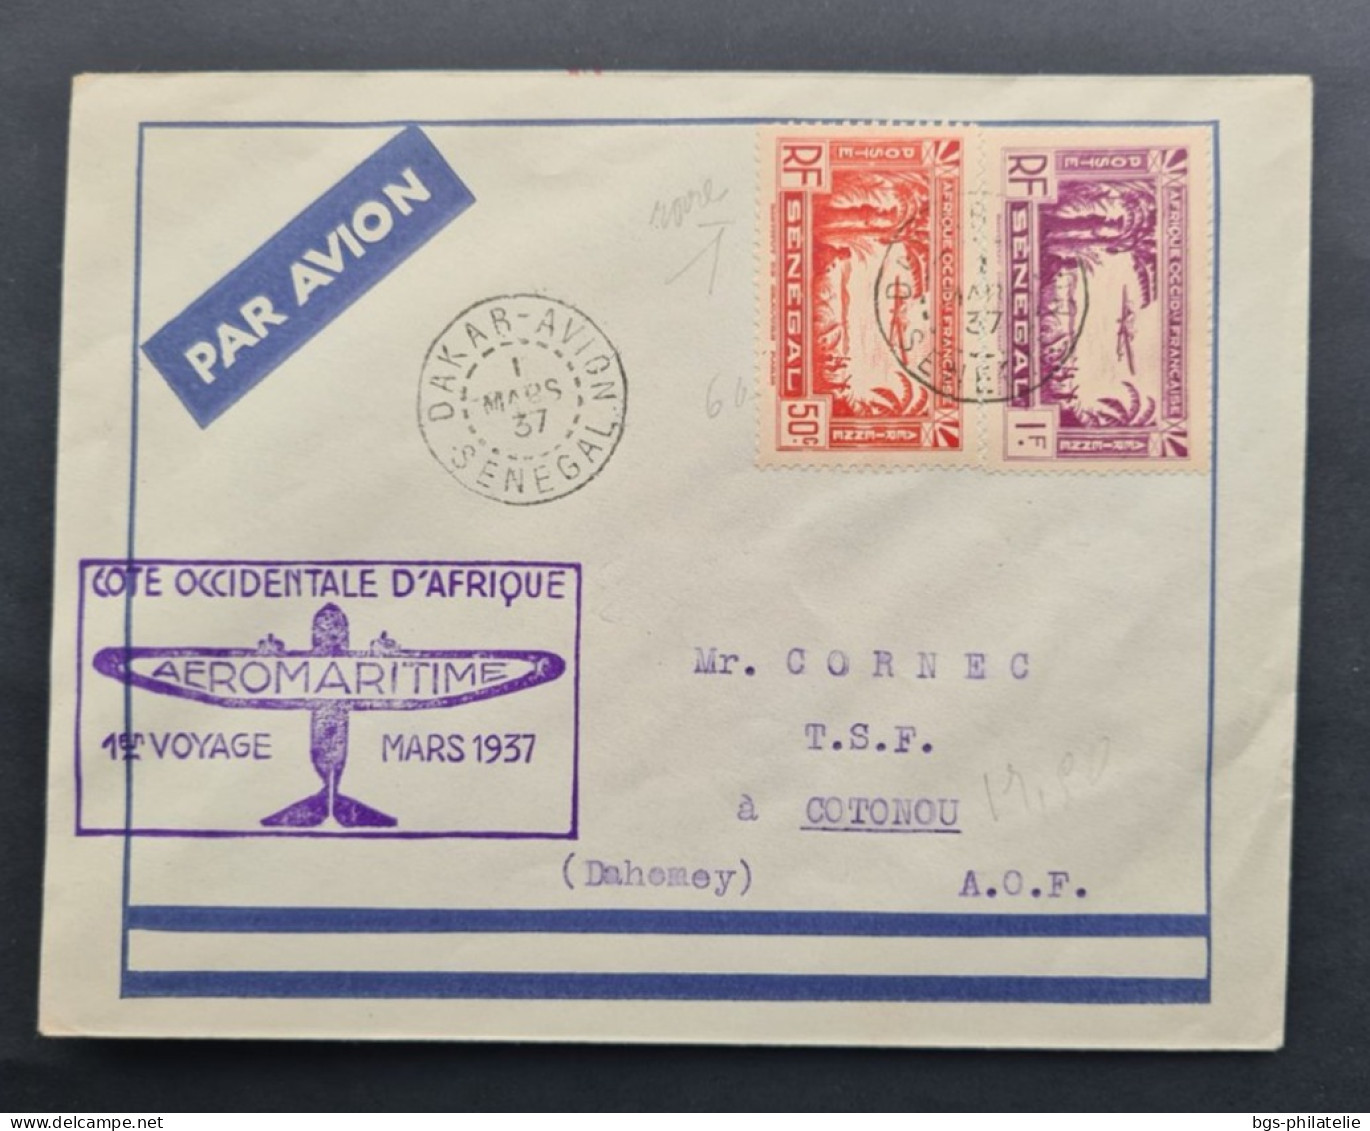 SÉNÉGAL,  Timbres Numéros PA2 Et PA3 Sur Lettre Avec Griffe Aéromaritime Cote Occidentale D'Afrique 1er Voyage Mars 1937 - Cartas & Documentos